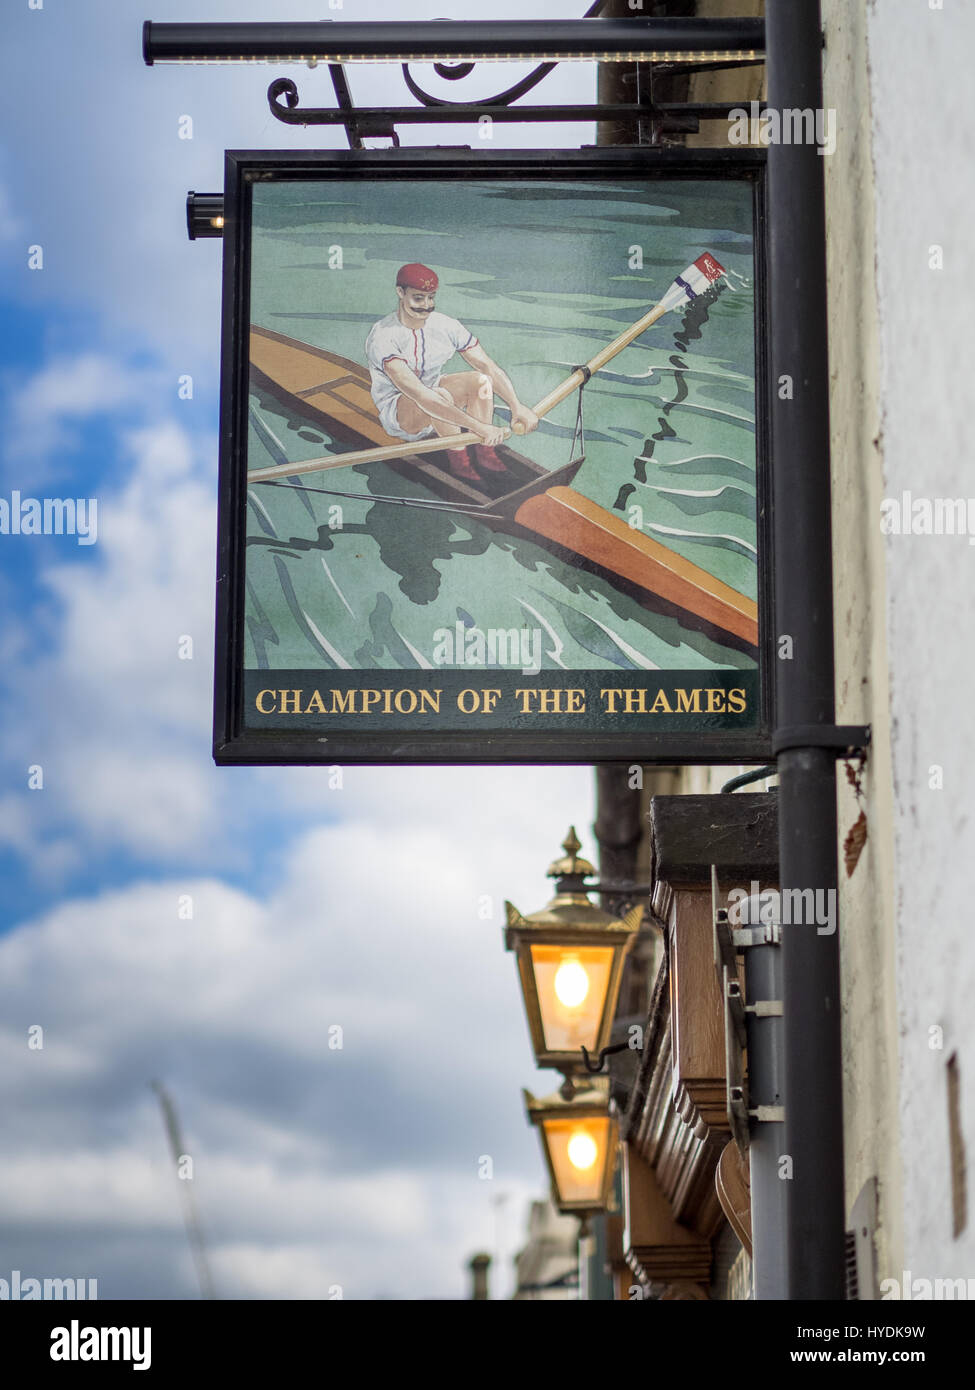 Signer pour la championne de la Thames pub dans King Street Cambridge. Nommé d'après un c19 race Thames sculler gagnantes qui ont demandé à être visé par ce nom. Banque D'Images